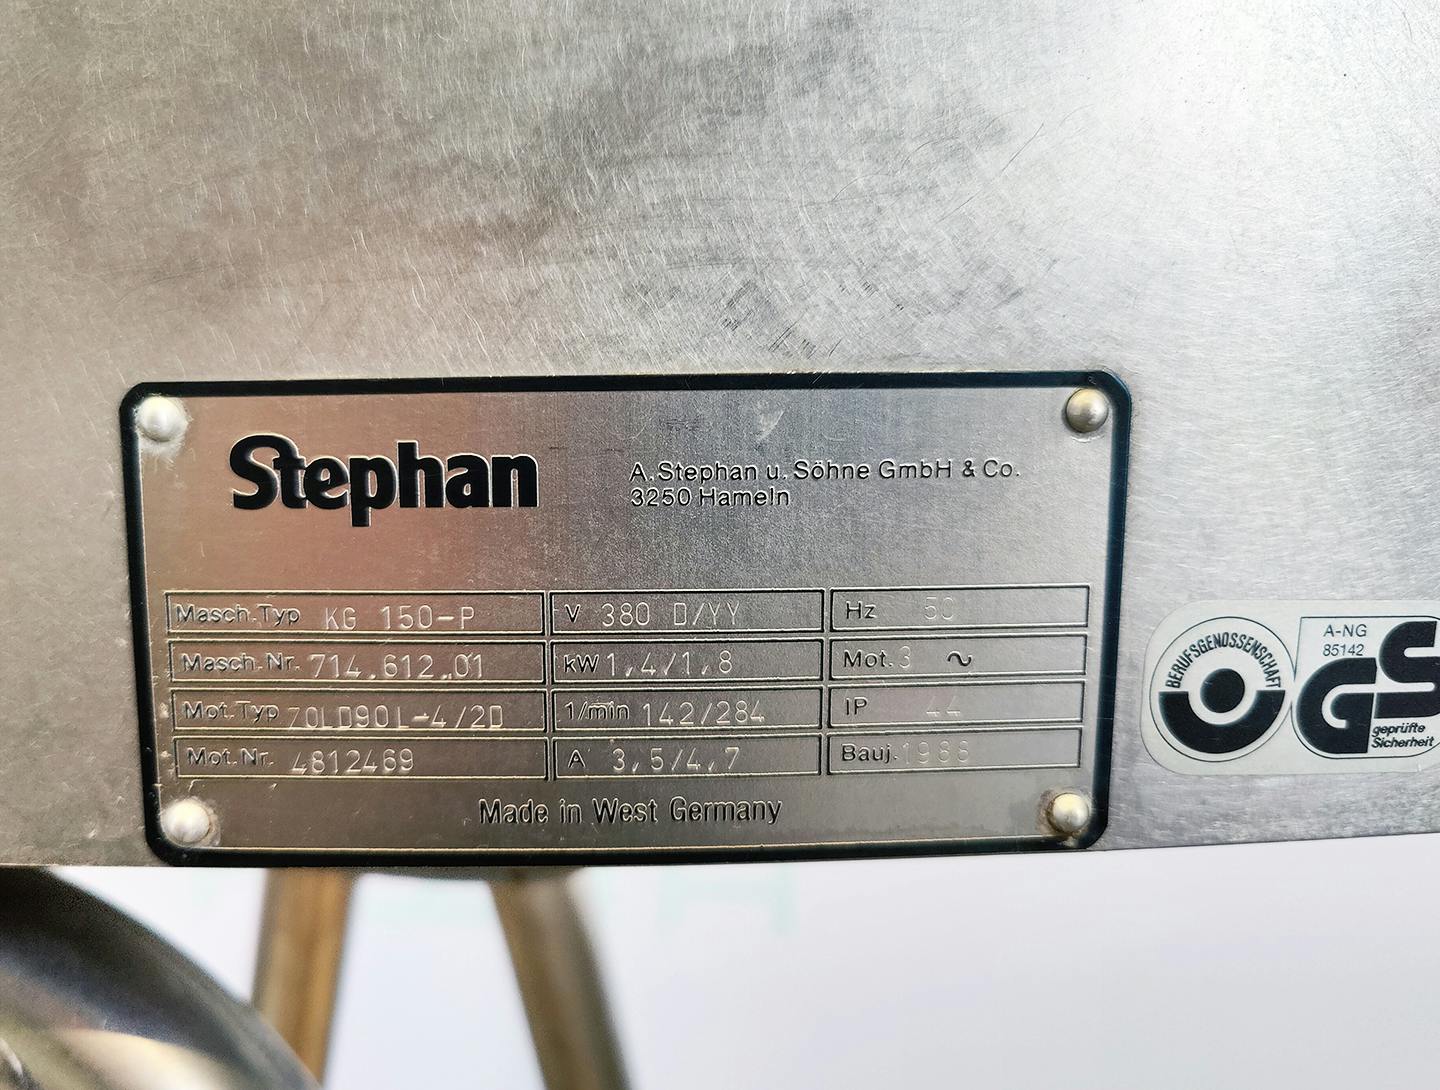 Stephan 150-P - Peneira granuladora - image 7